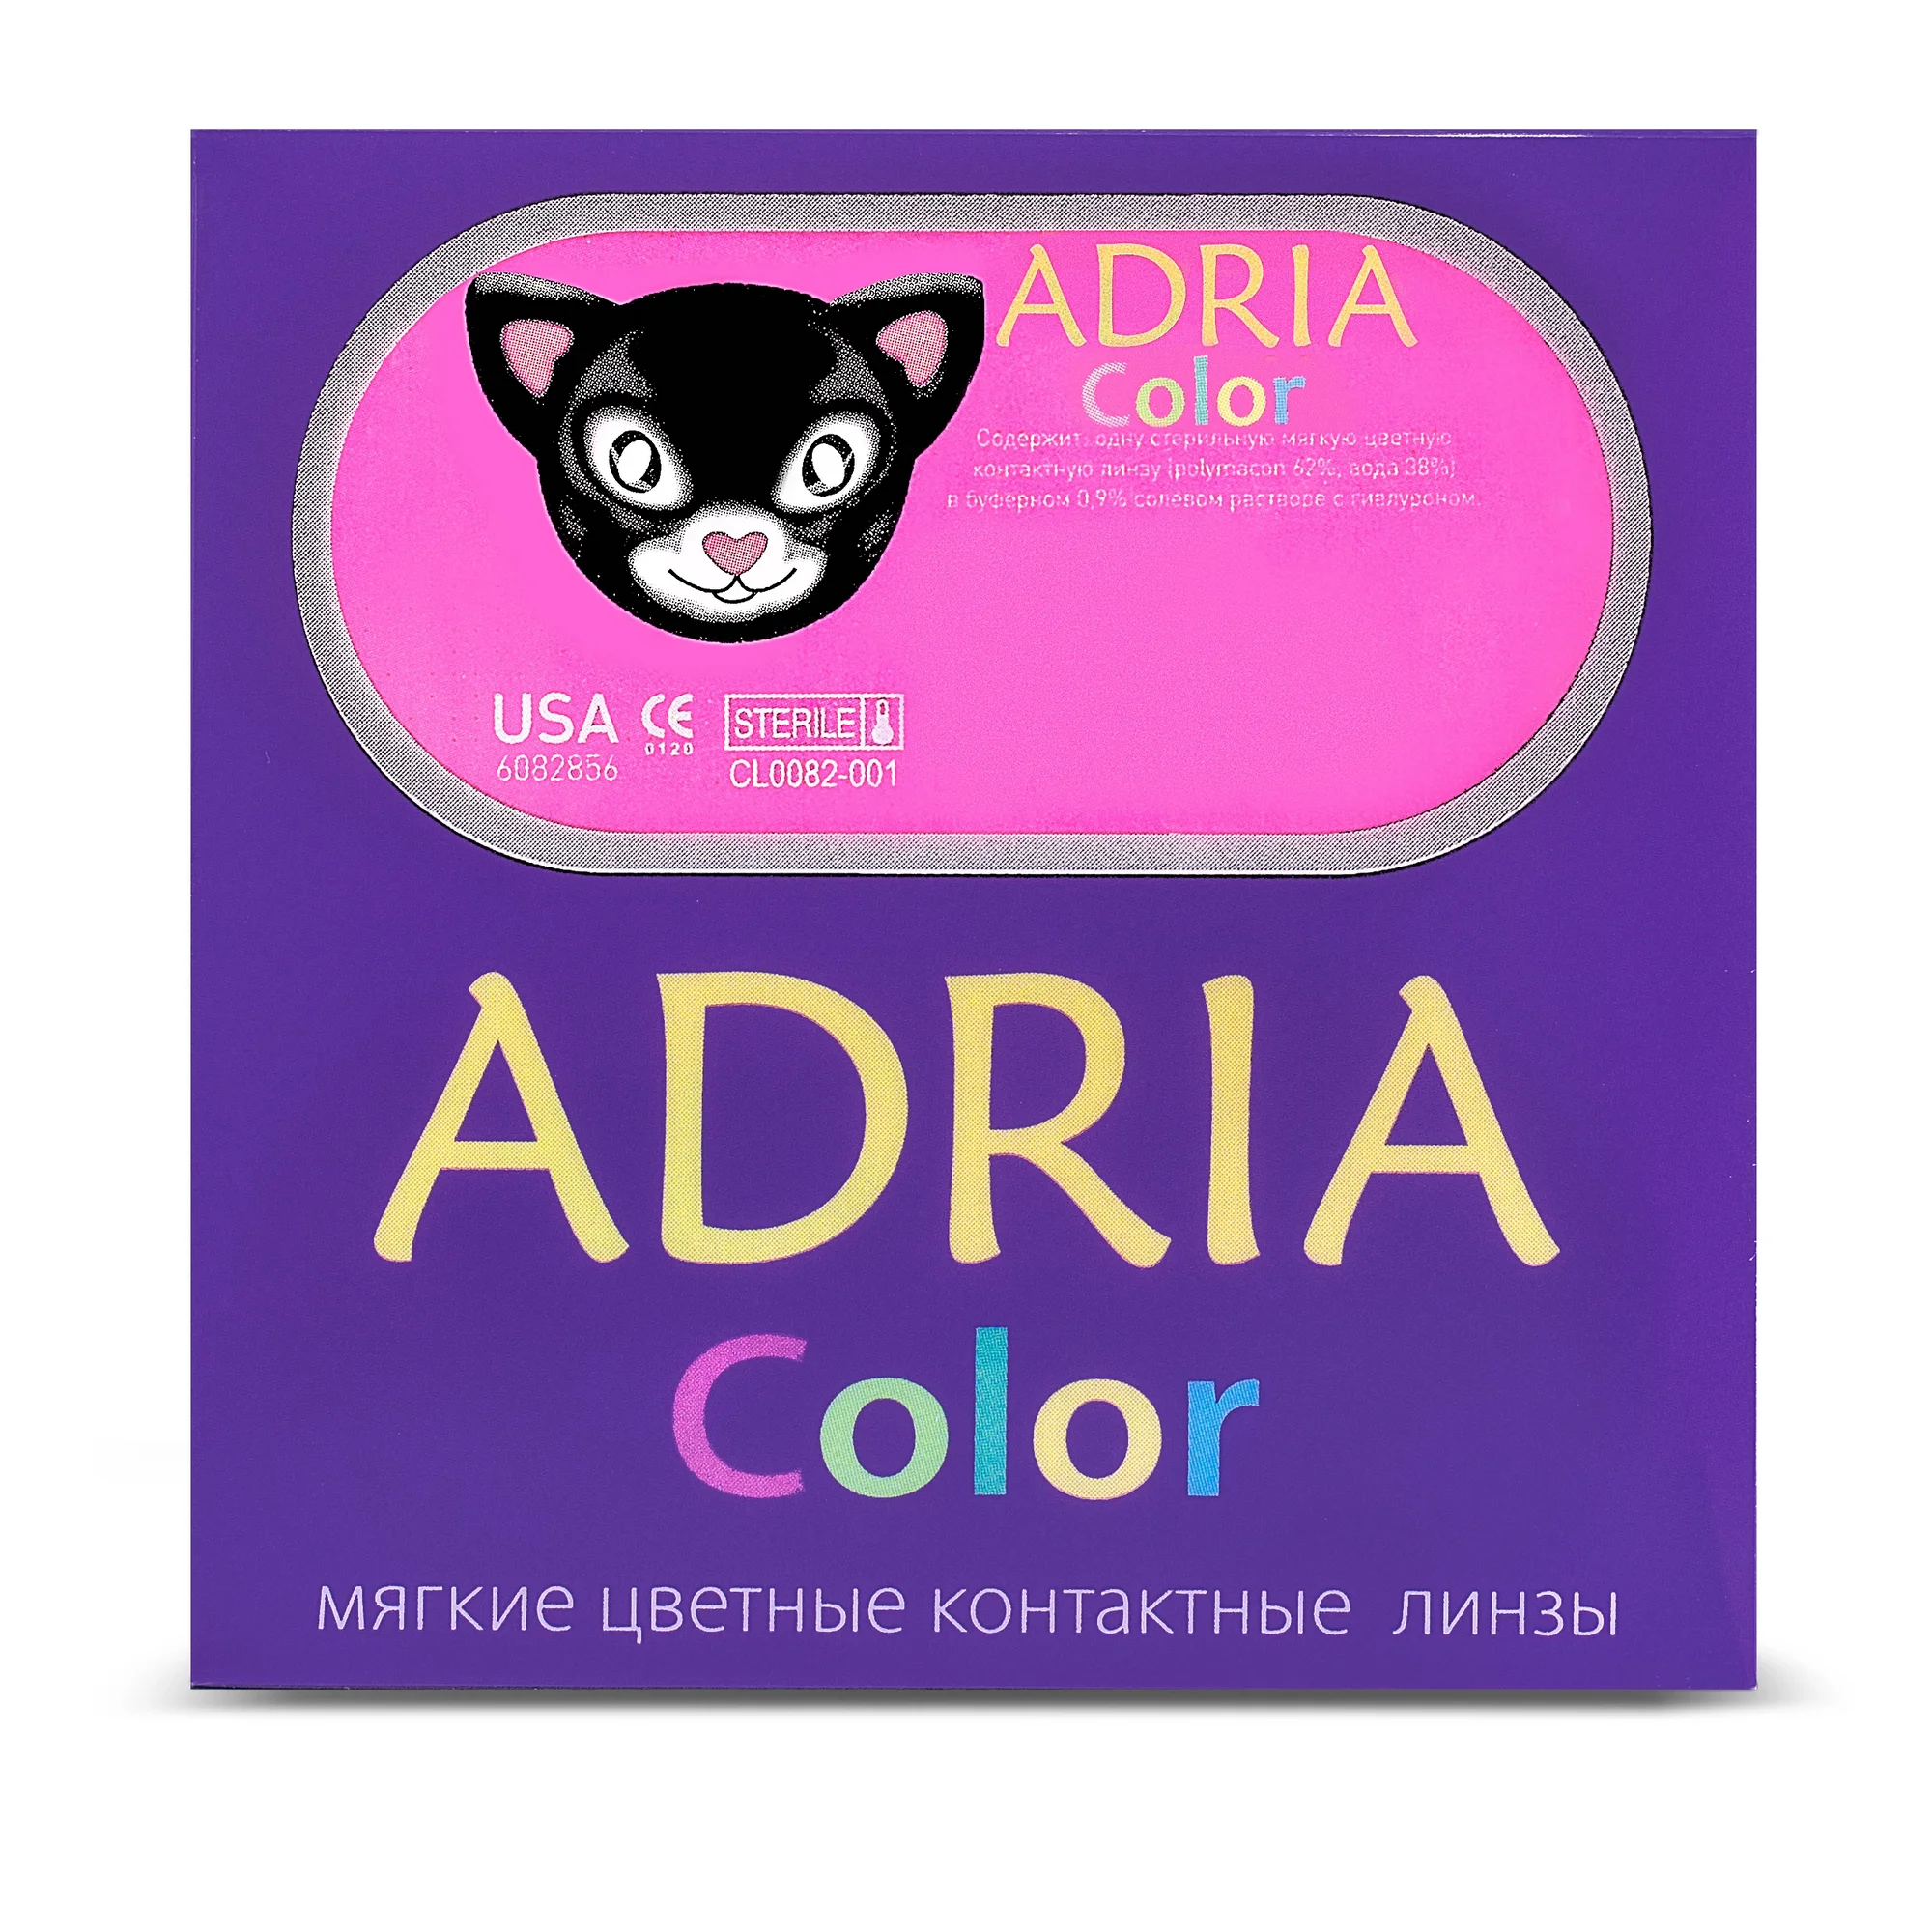 COLOR BOX ADRIA Color 1 Tone Lavender (лаванда)